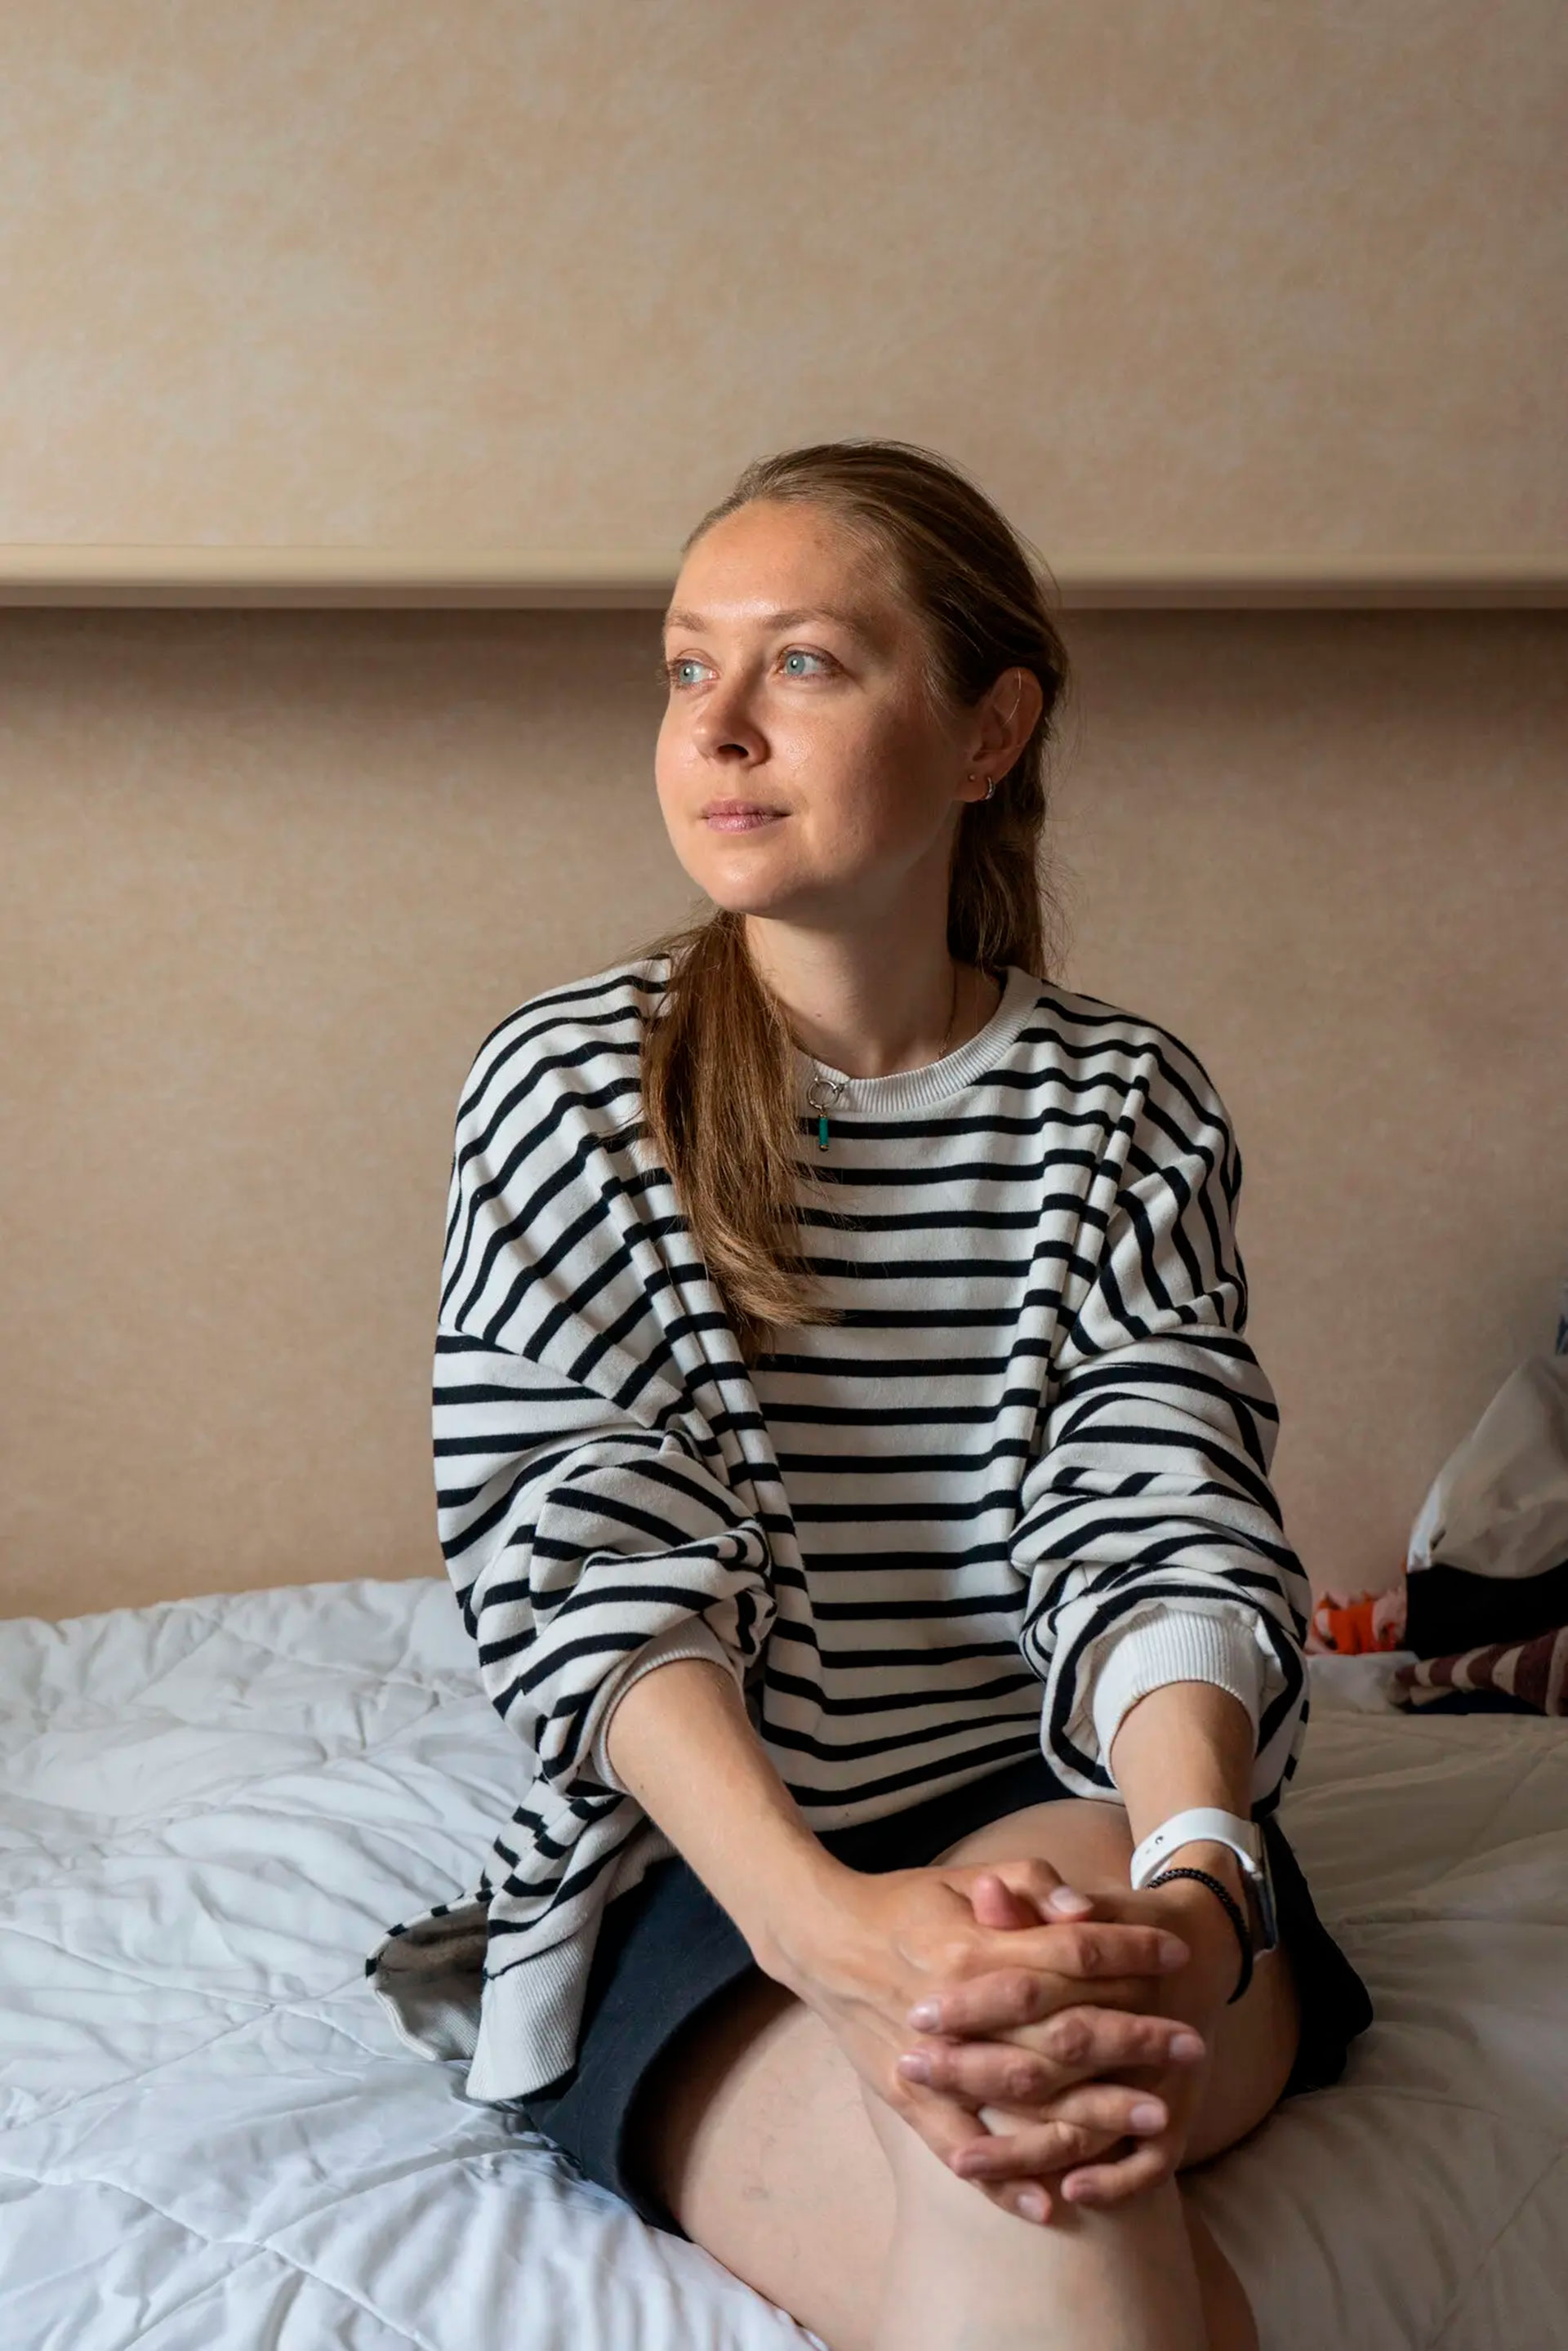 Shevchenko, que empezó a vivir en el barco en abril, no ha podido encontrar un apartamento asequible (Marta Giaccone para The New York Times)